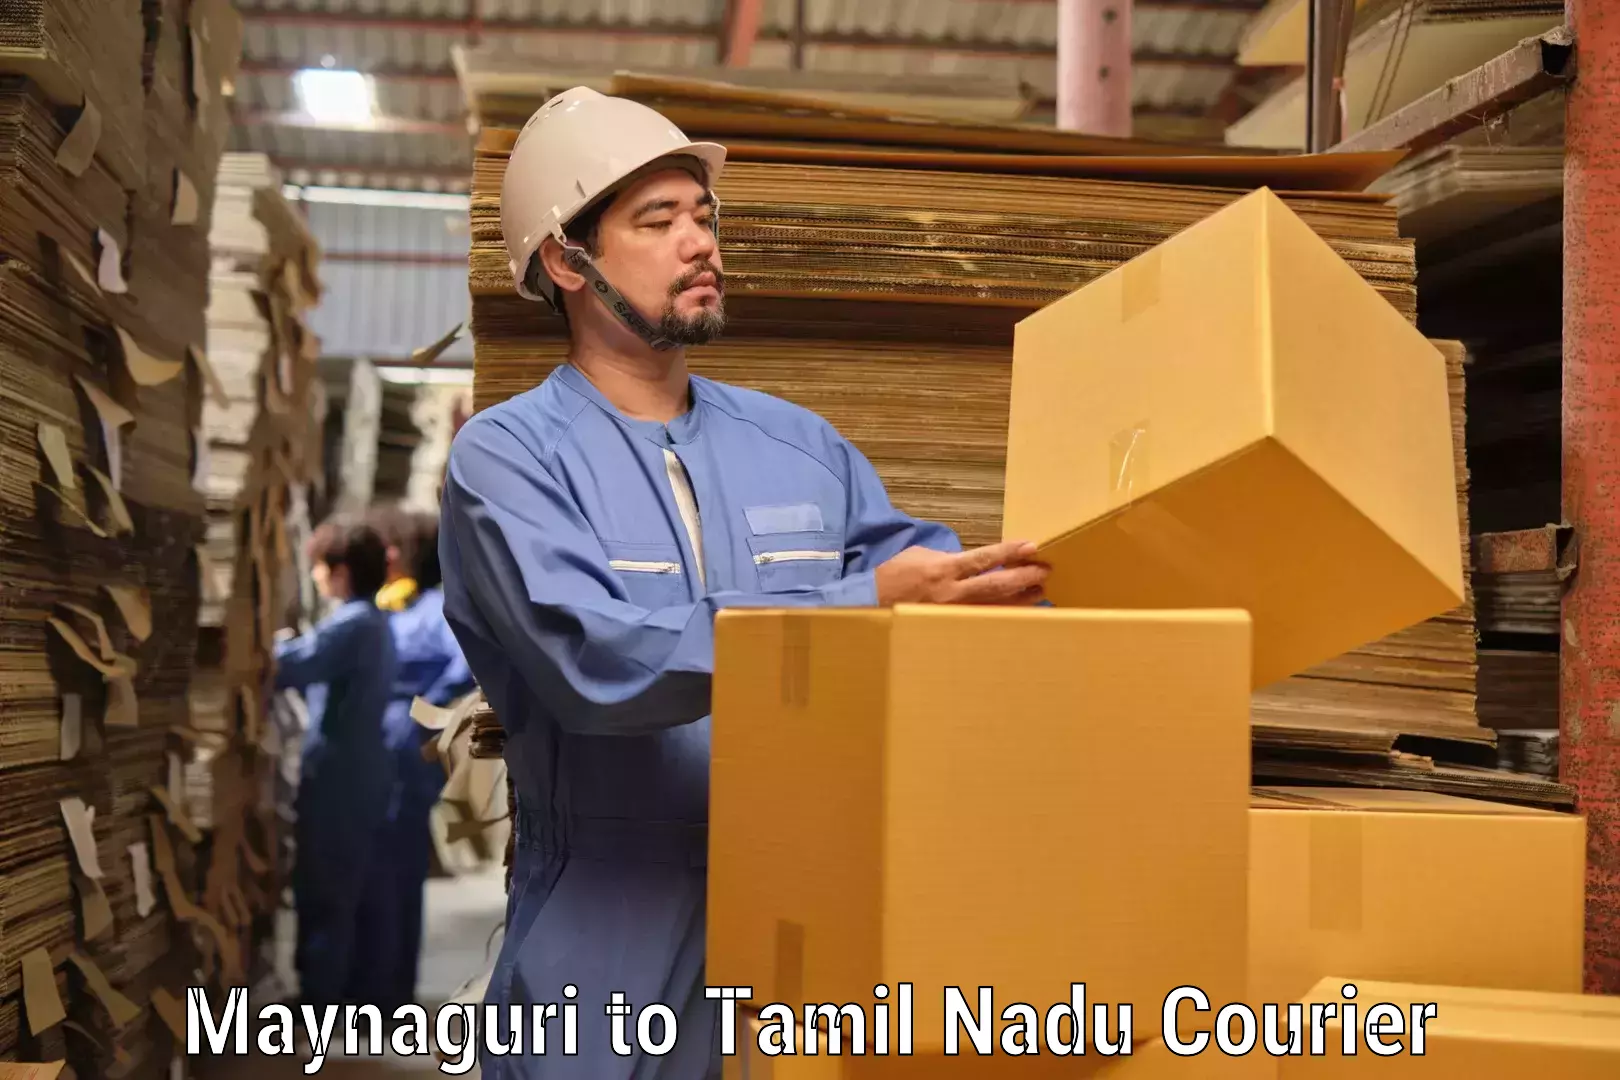 Premium courier services in Maynaguri to Tamil Nadu